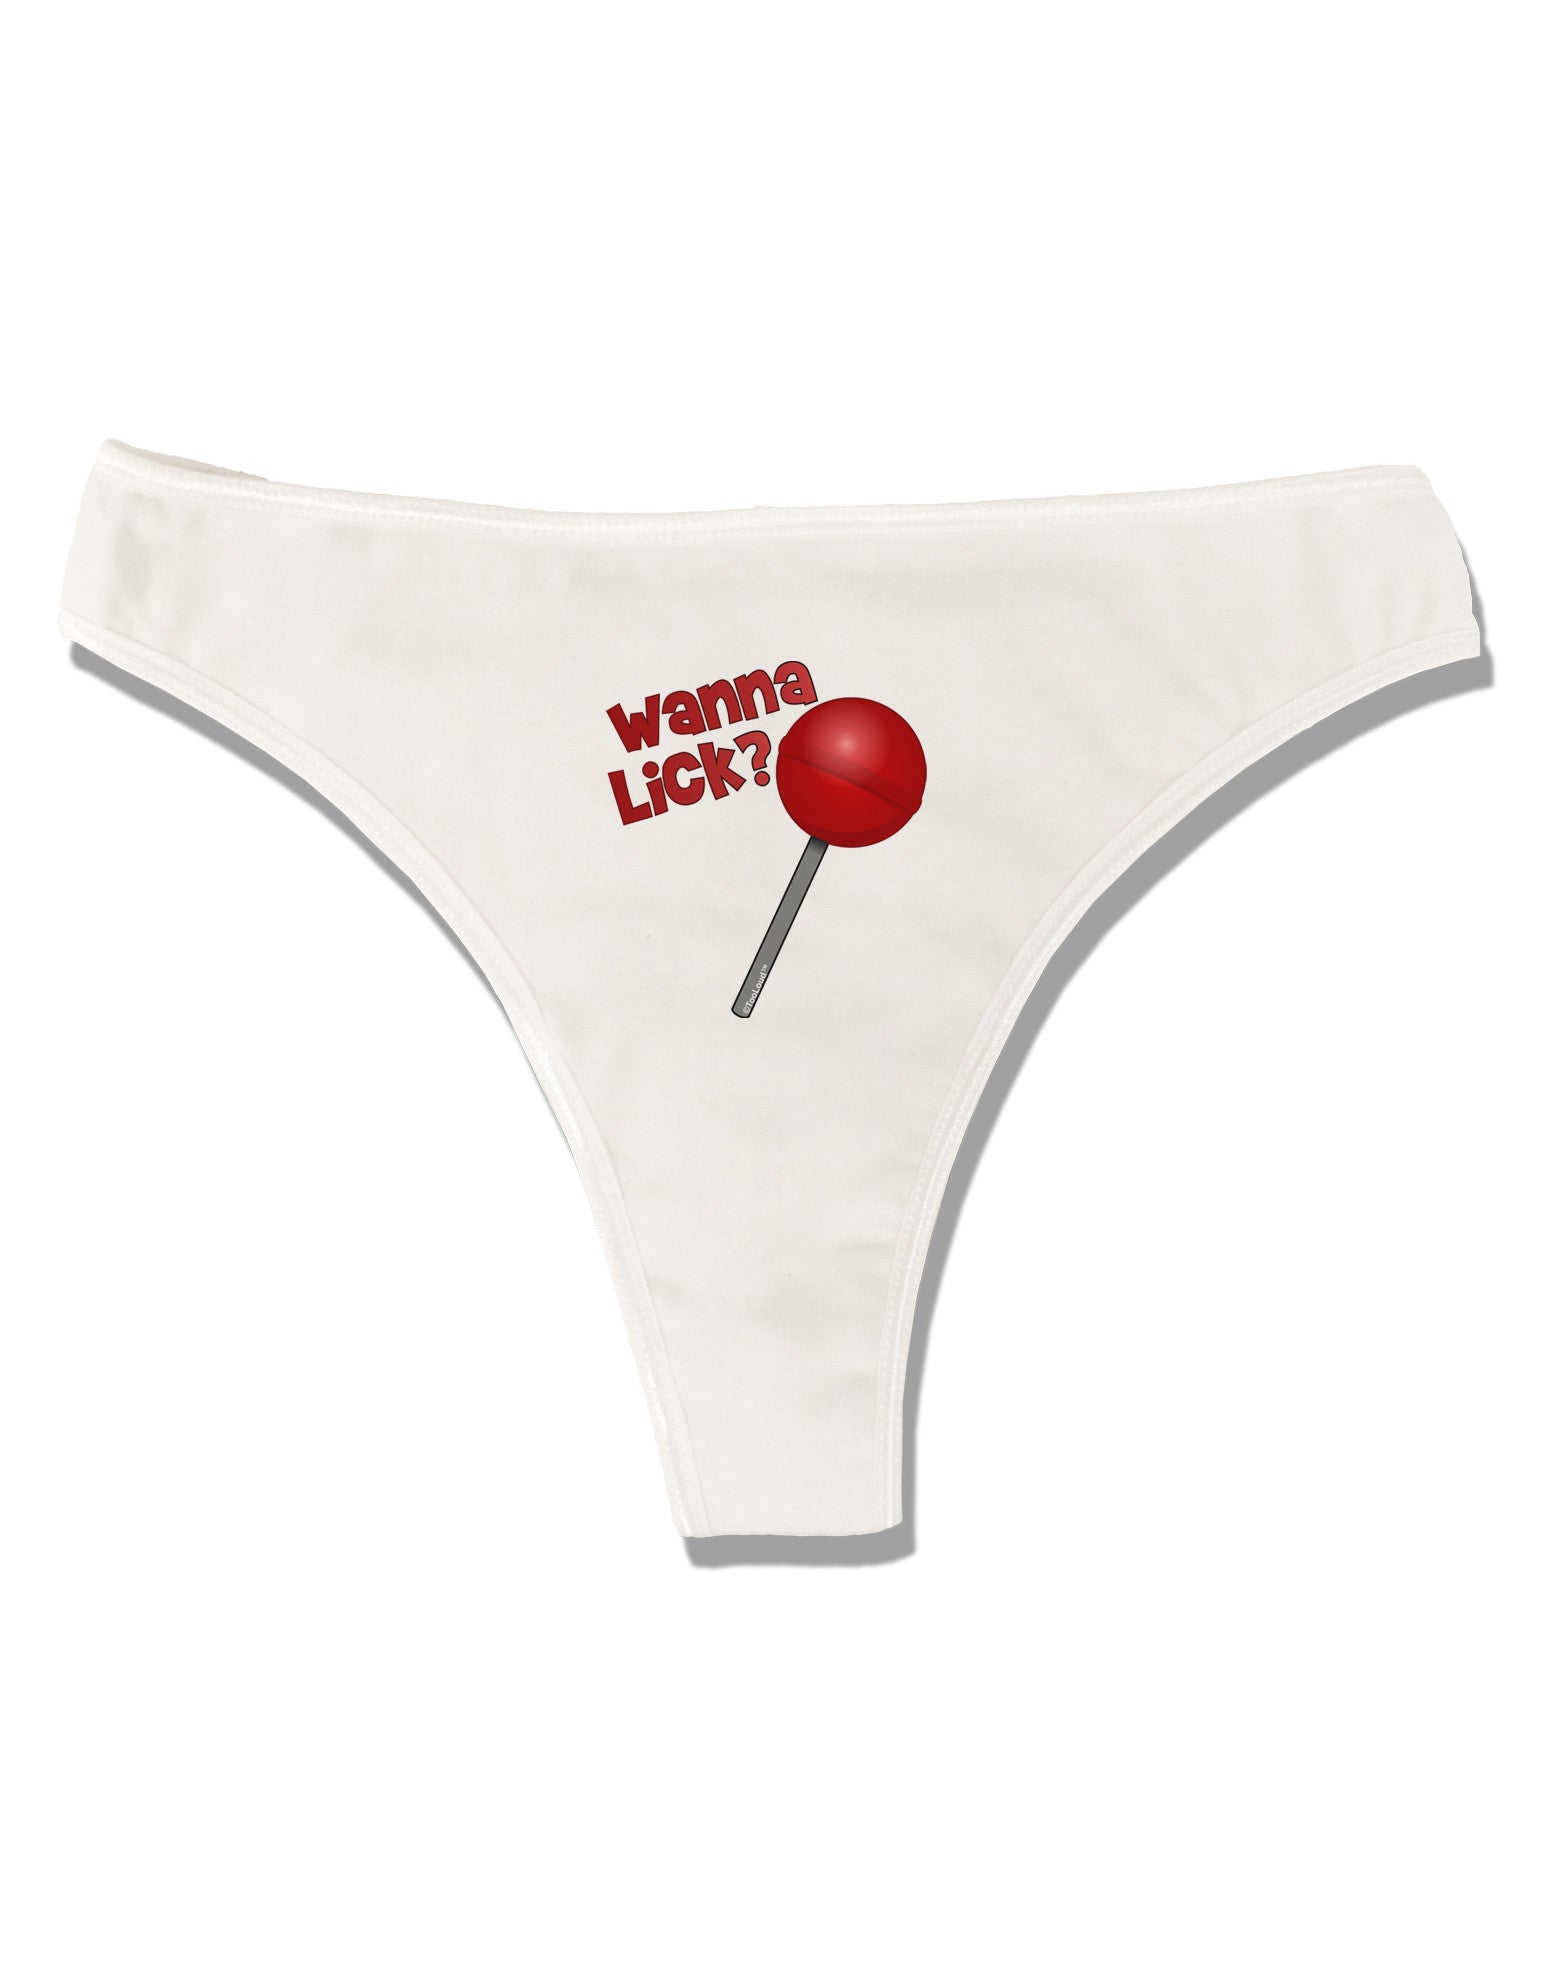 Wanna Lick Lollipop Womens Thong Underwear